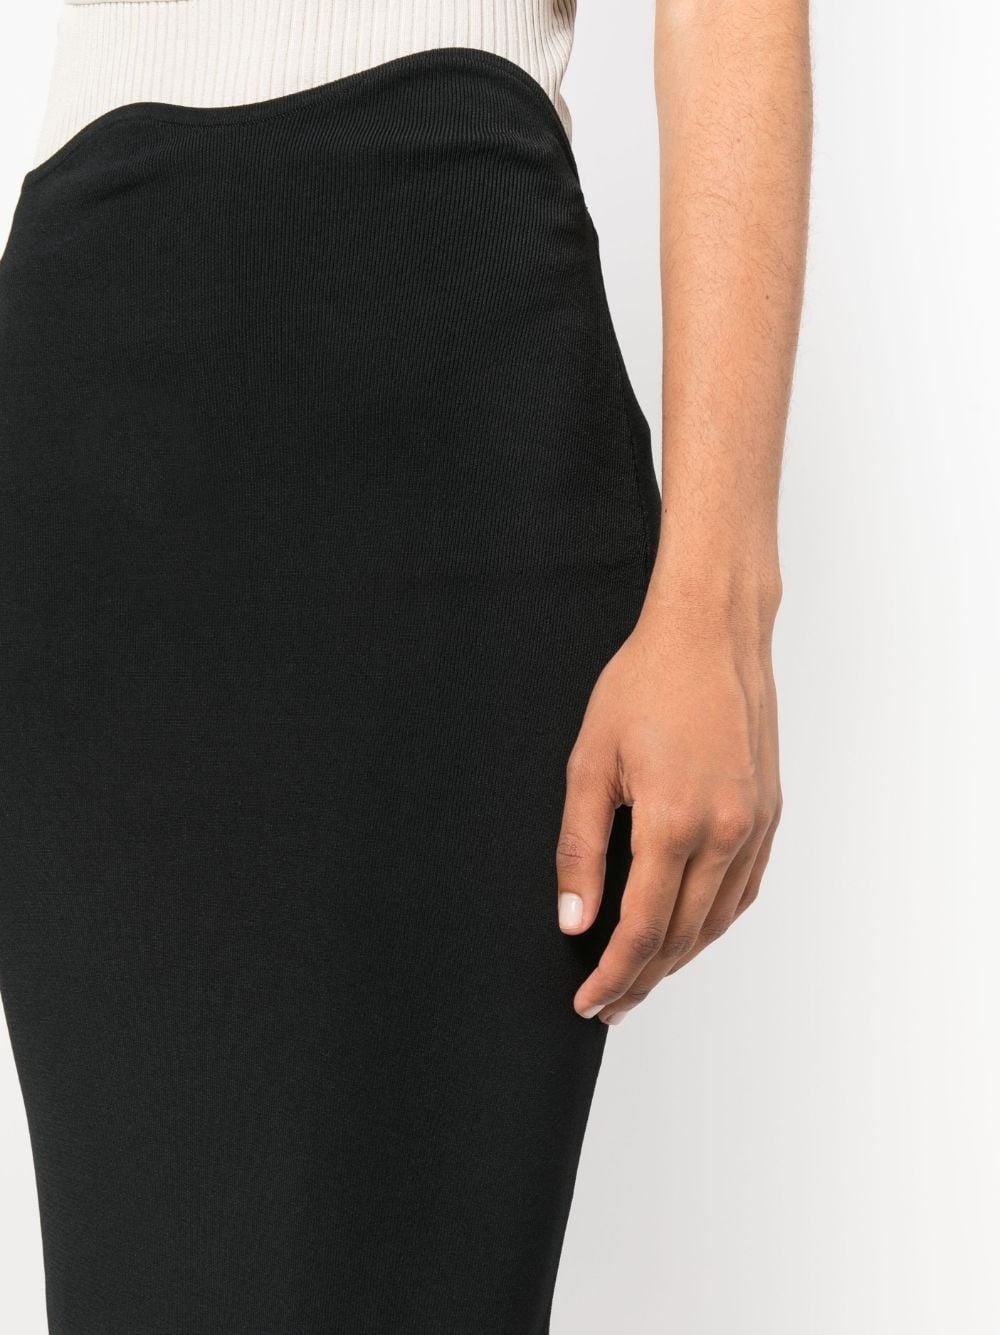 Maparadita high-waist skirt - 5